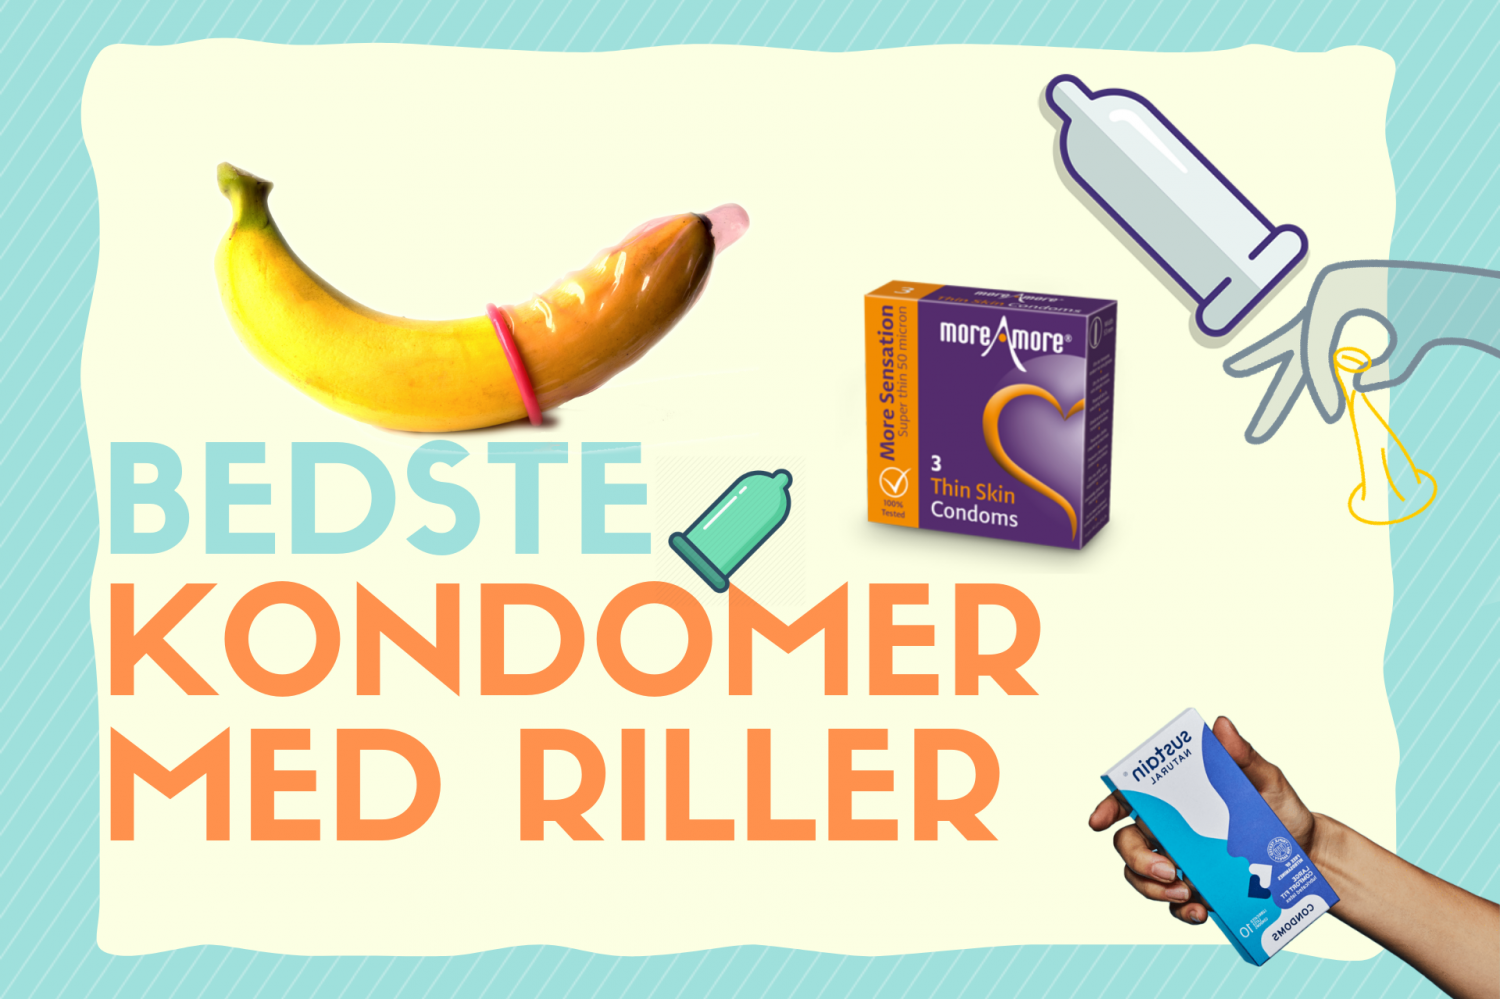 Bedste kondomer med riller